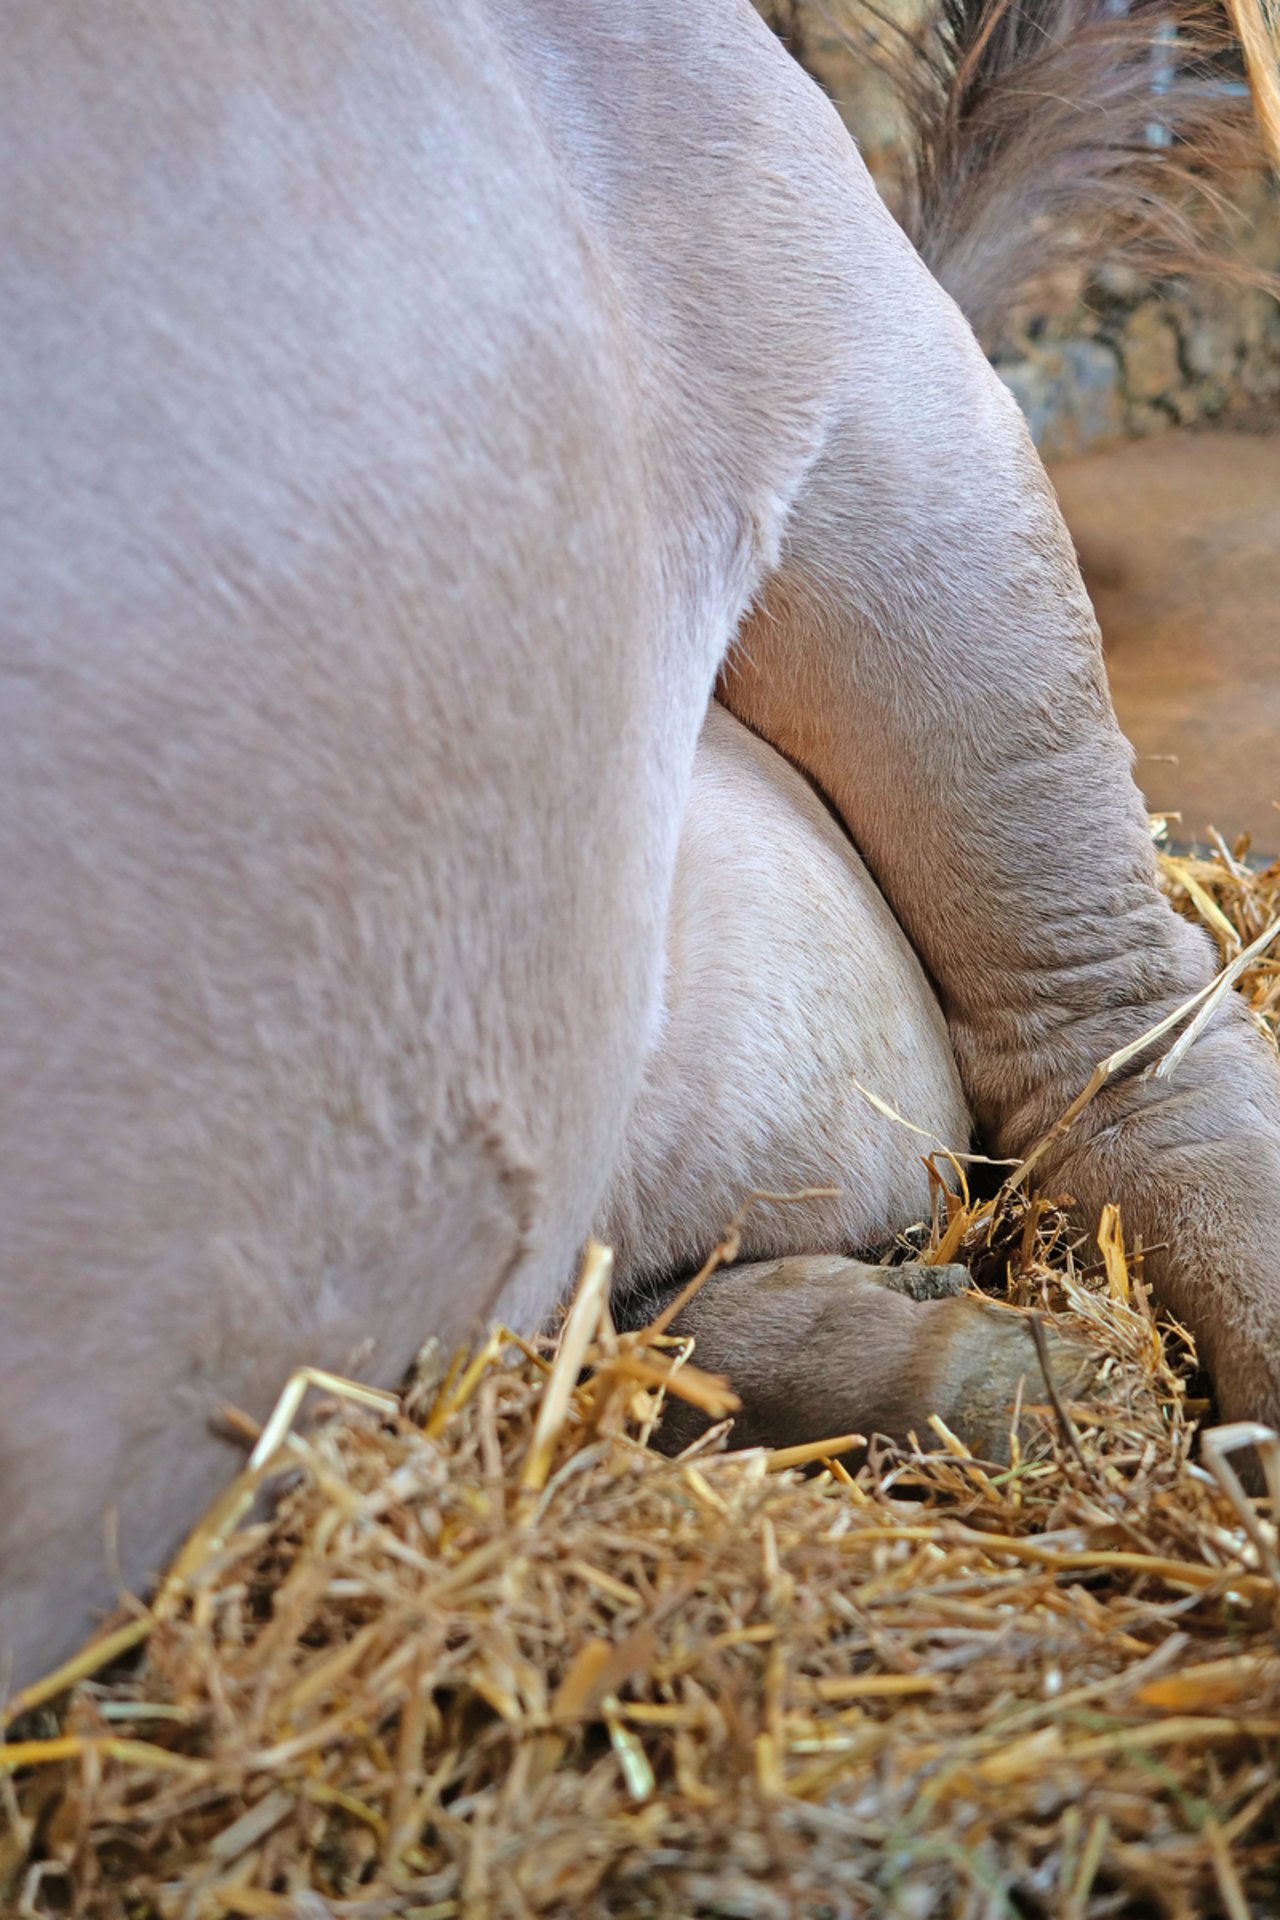 Betrieb Käslin: Die Kuh liegt dank dem weichen Strohbett auf ihrem Bein und nicht auf dem Euter. Bild: Martina Rüegger